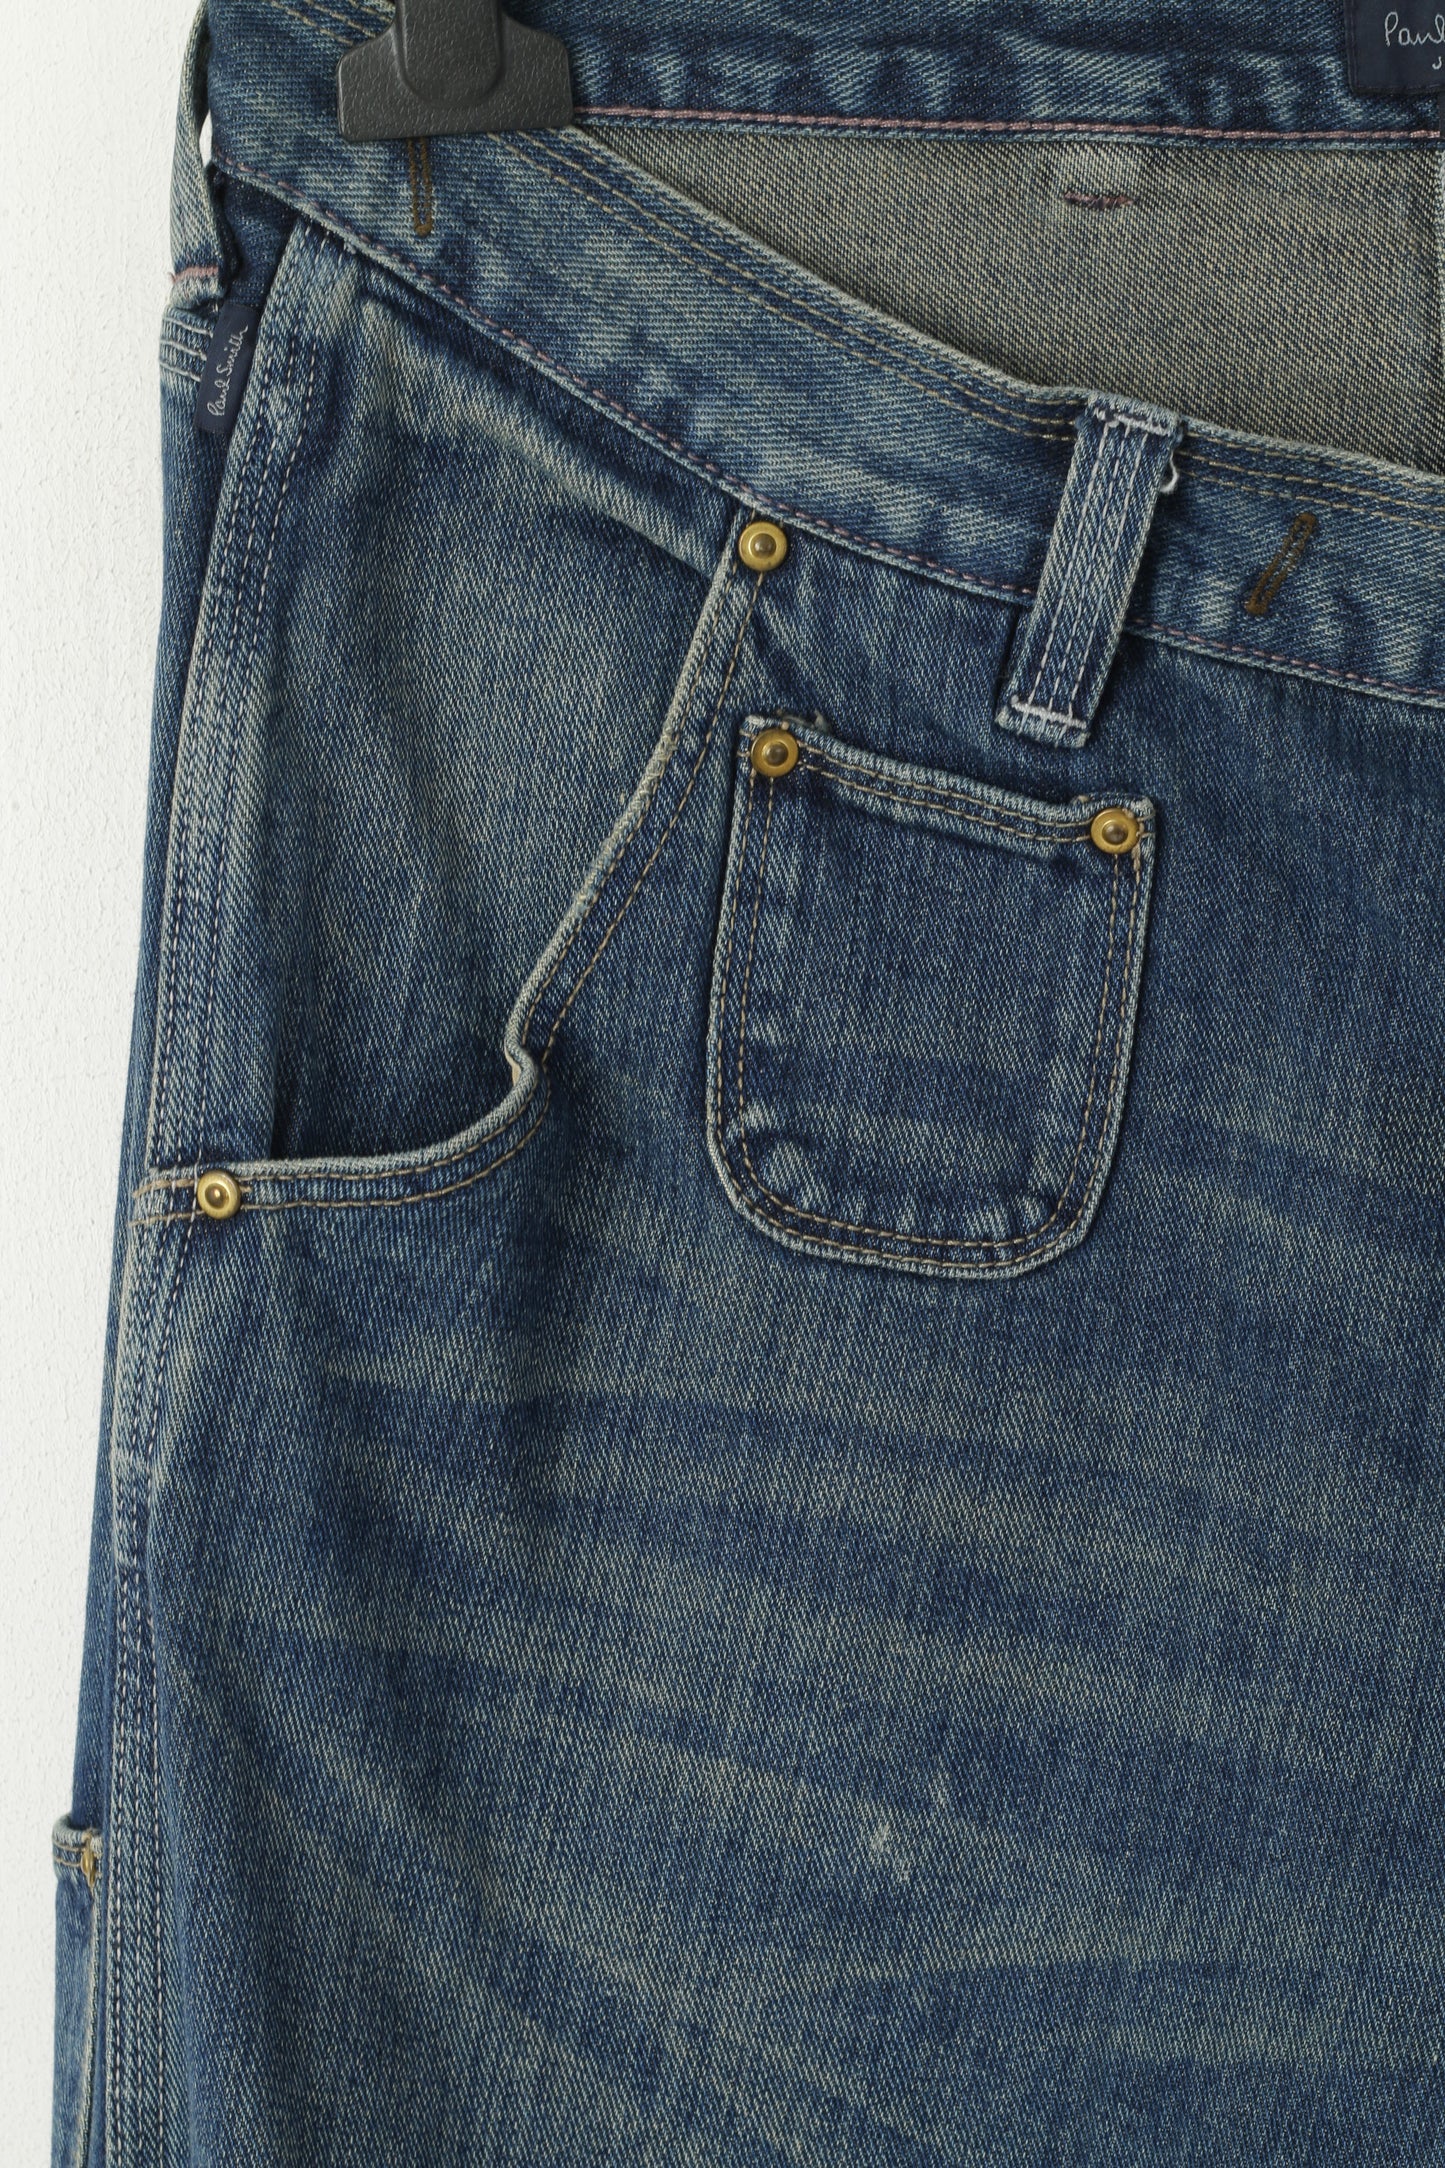 Paul Smith Jeans Homme 34 Pantalon Bleu Marine Denim Coton Jambe Droite Pantalon Classique